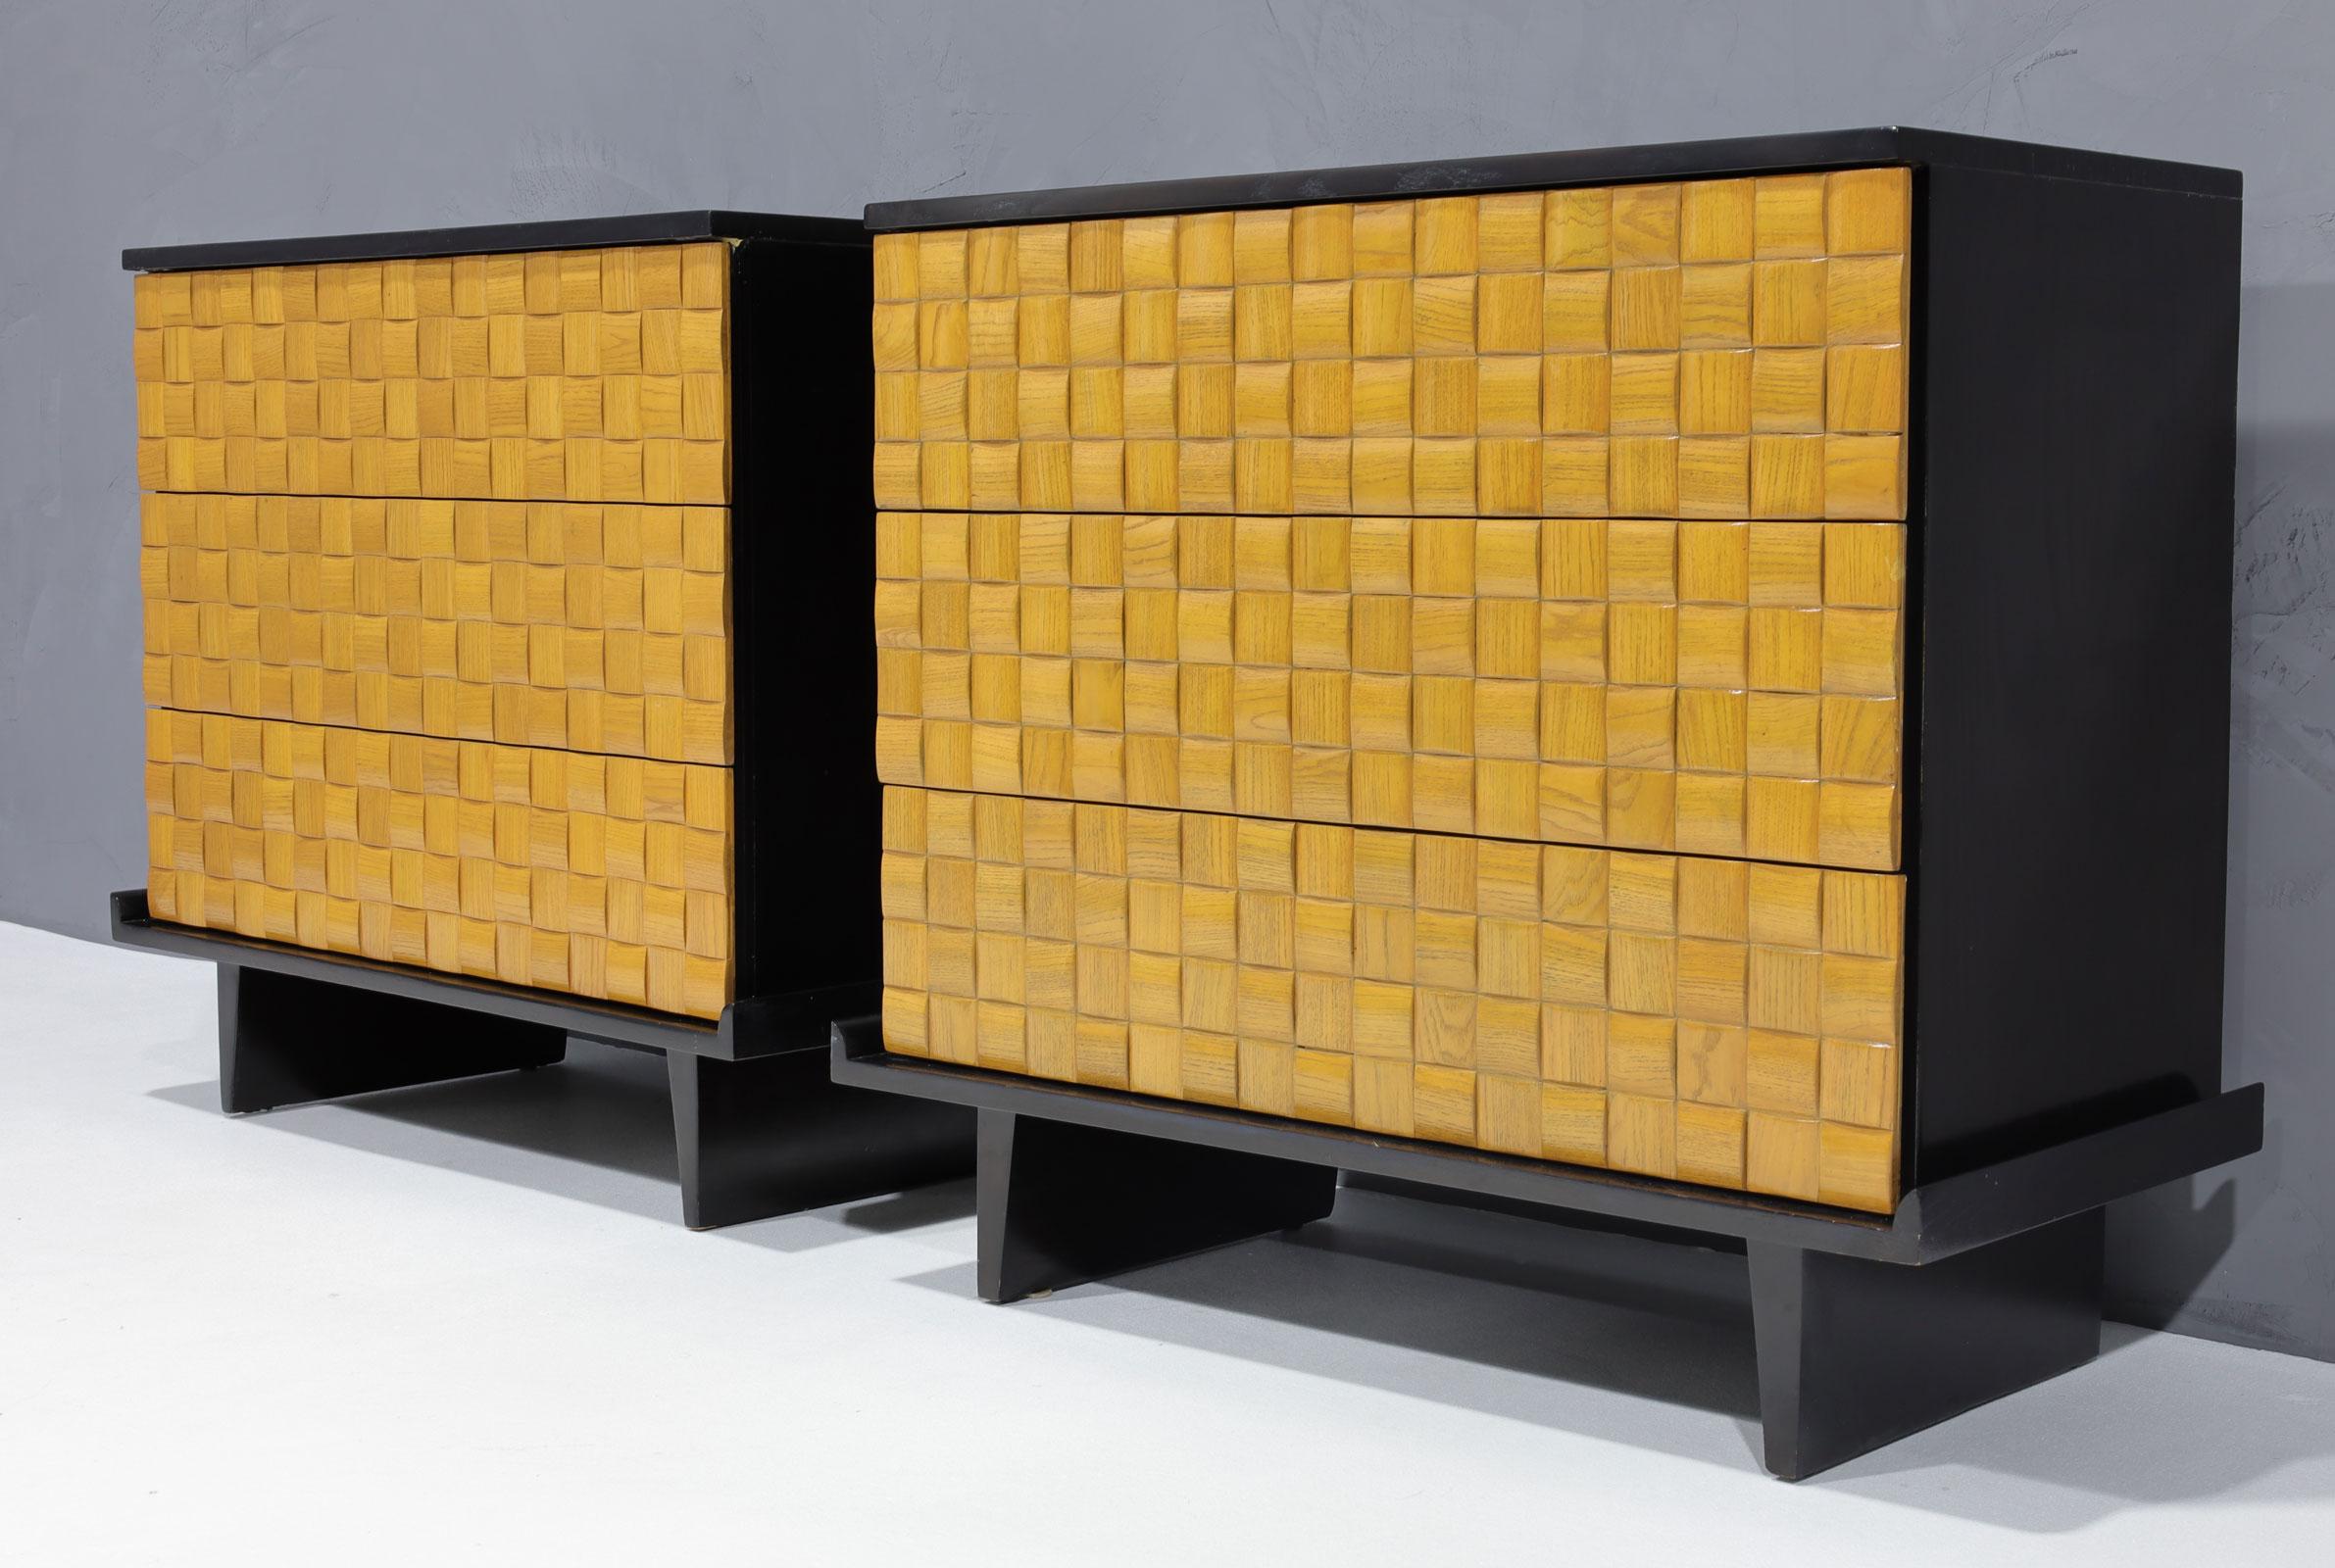 Paire de tables de nuit ou de commodes en chêne par Paul Laszlo pour Brown Saltman. Merveilleux motif Basketweave sur les façades des tiroirs. Trois tiroirs de taille généreuse. 